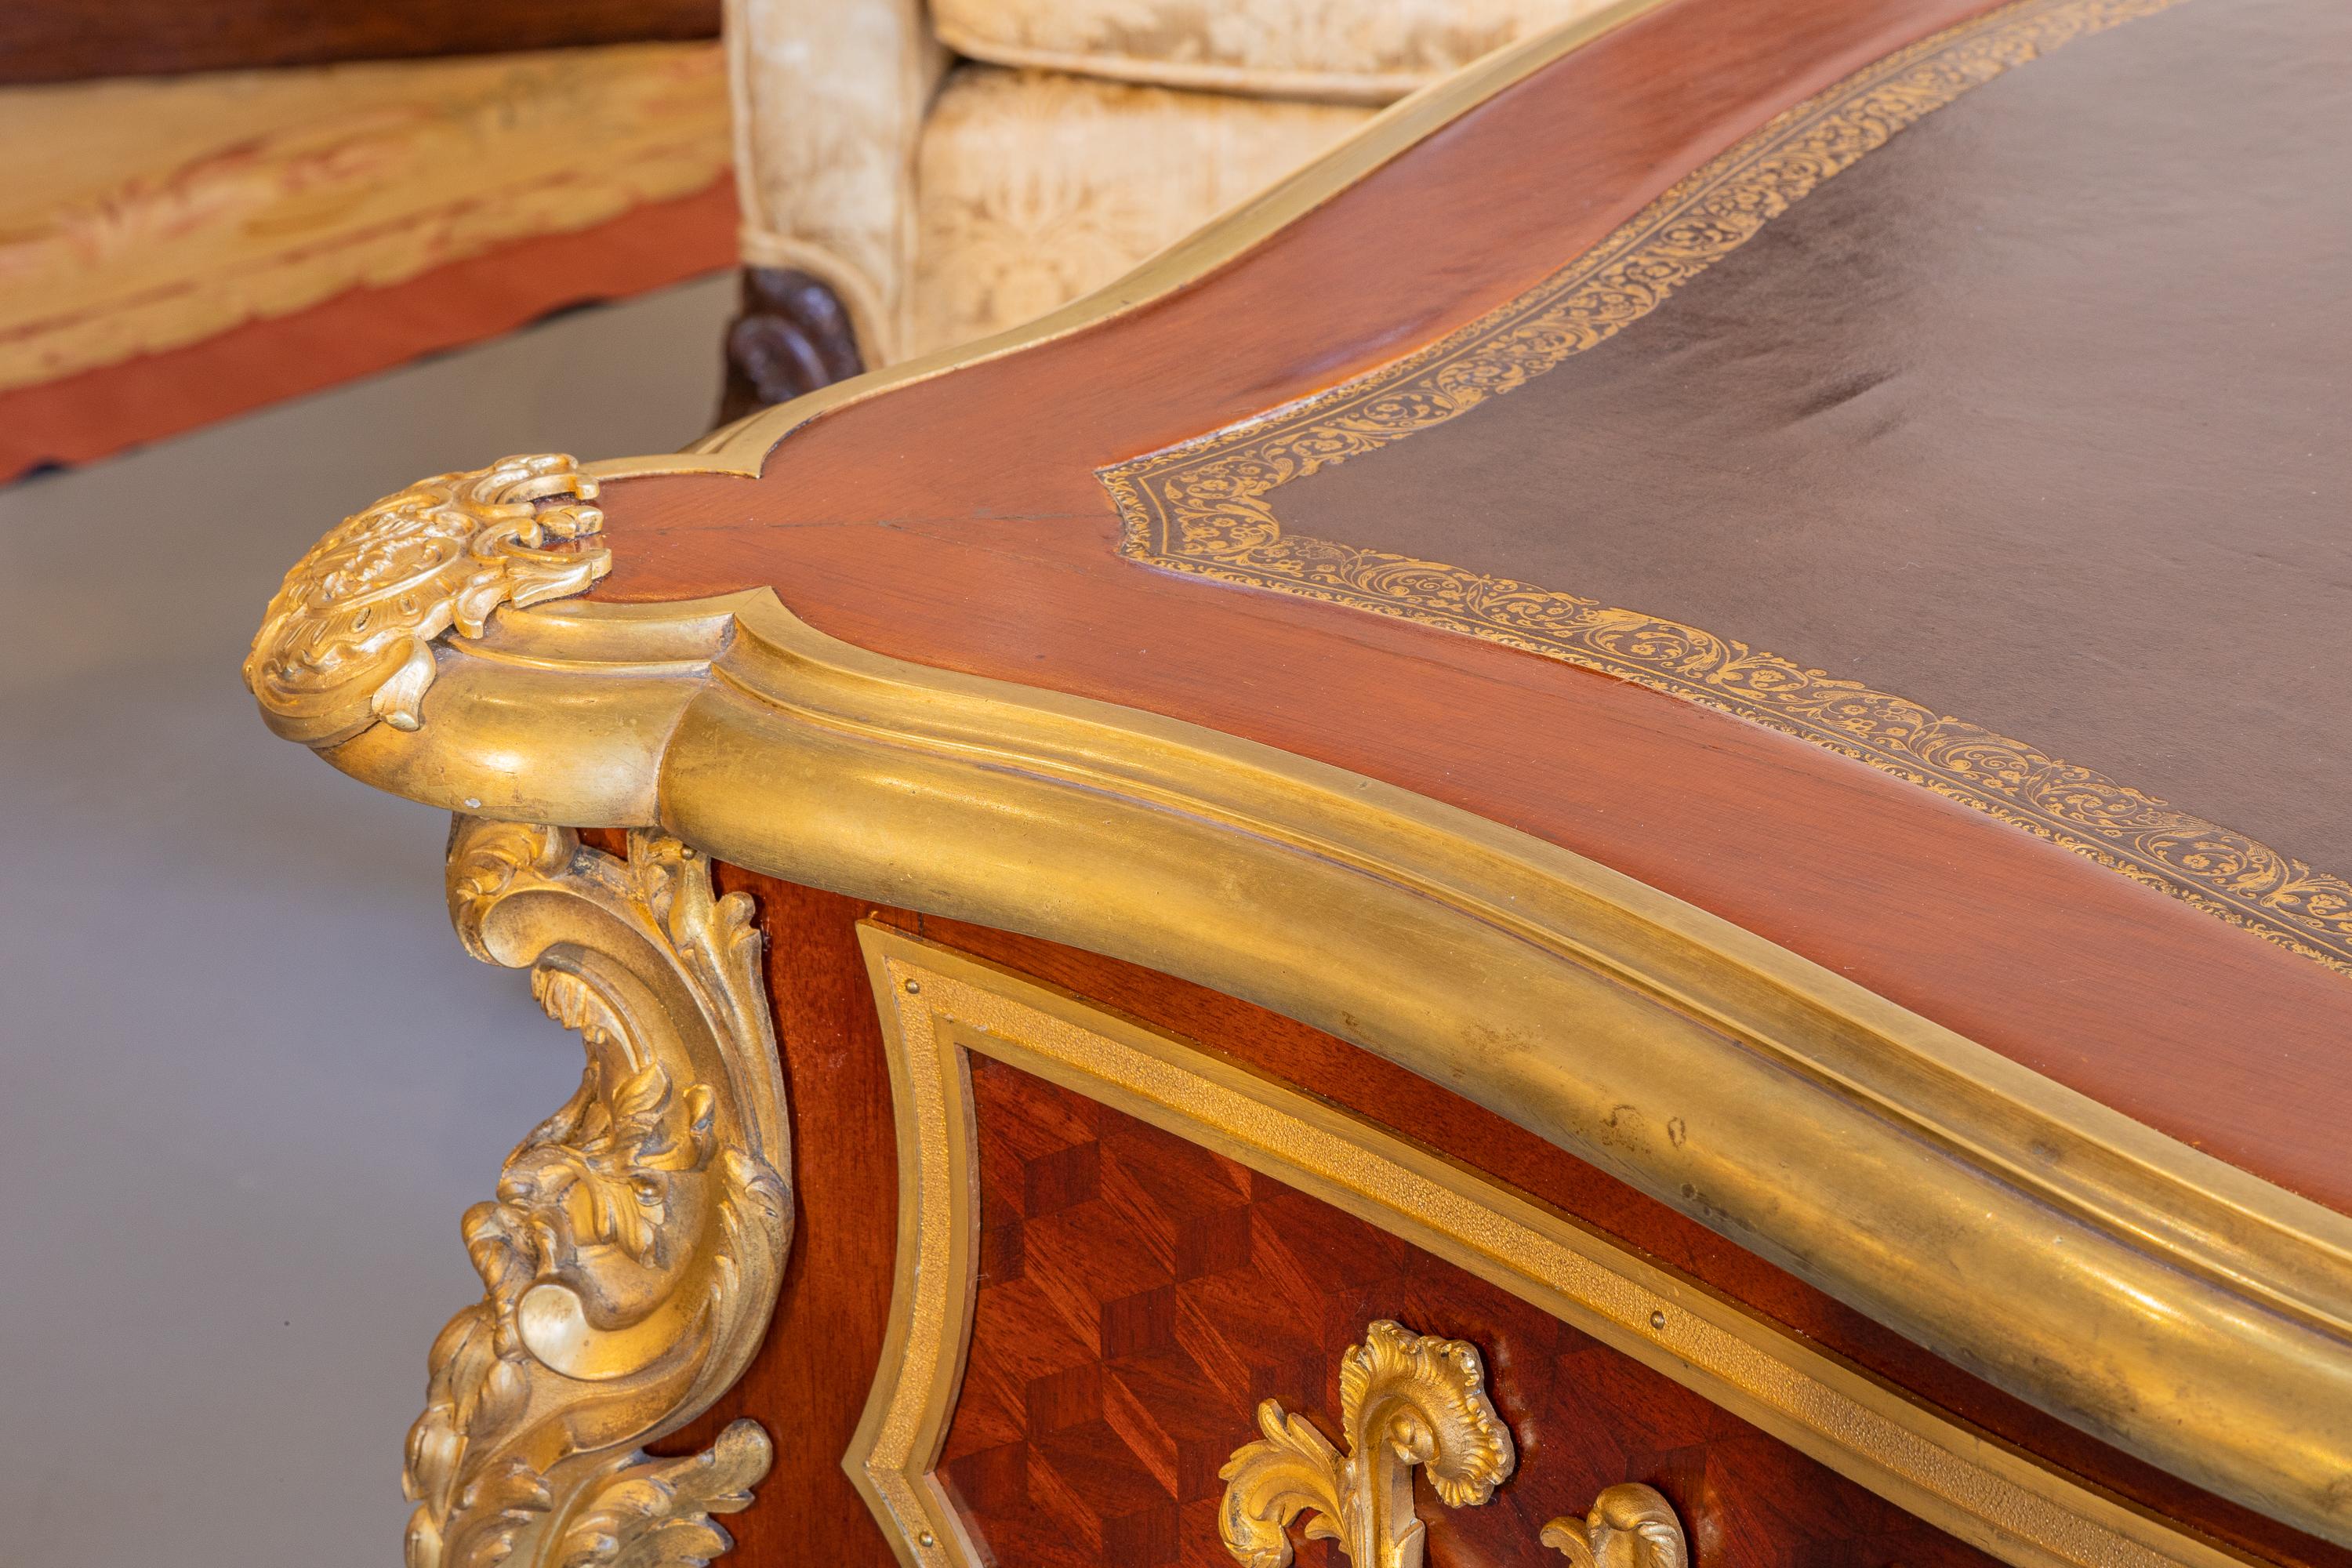 Eine sehr feine 19. Jahrhundert Französisch Louis XV Mahagoni und vergoldeter Bronze montiert bureau blat unterzeichnet Jemont Paris.
Feinste vergoldete Bronzebeschläge mit zwei seitlichen Auszügen. Original Lederverdeck . Französisch poliert.